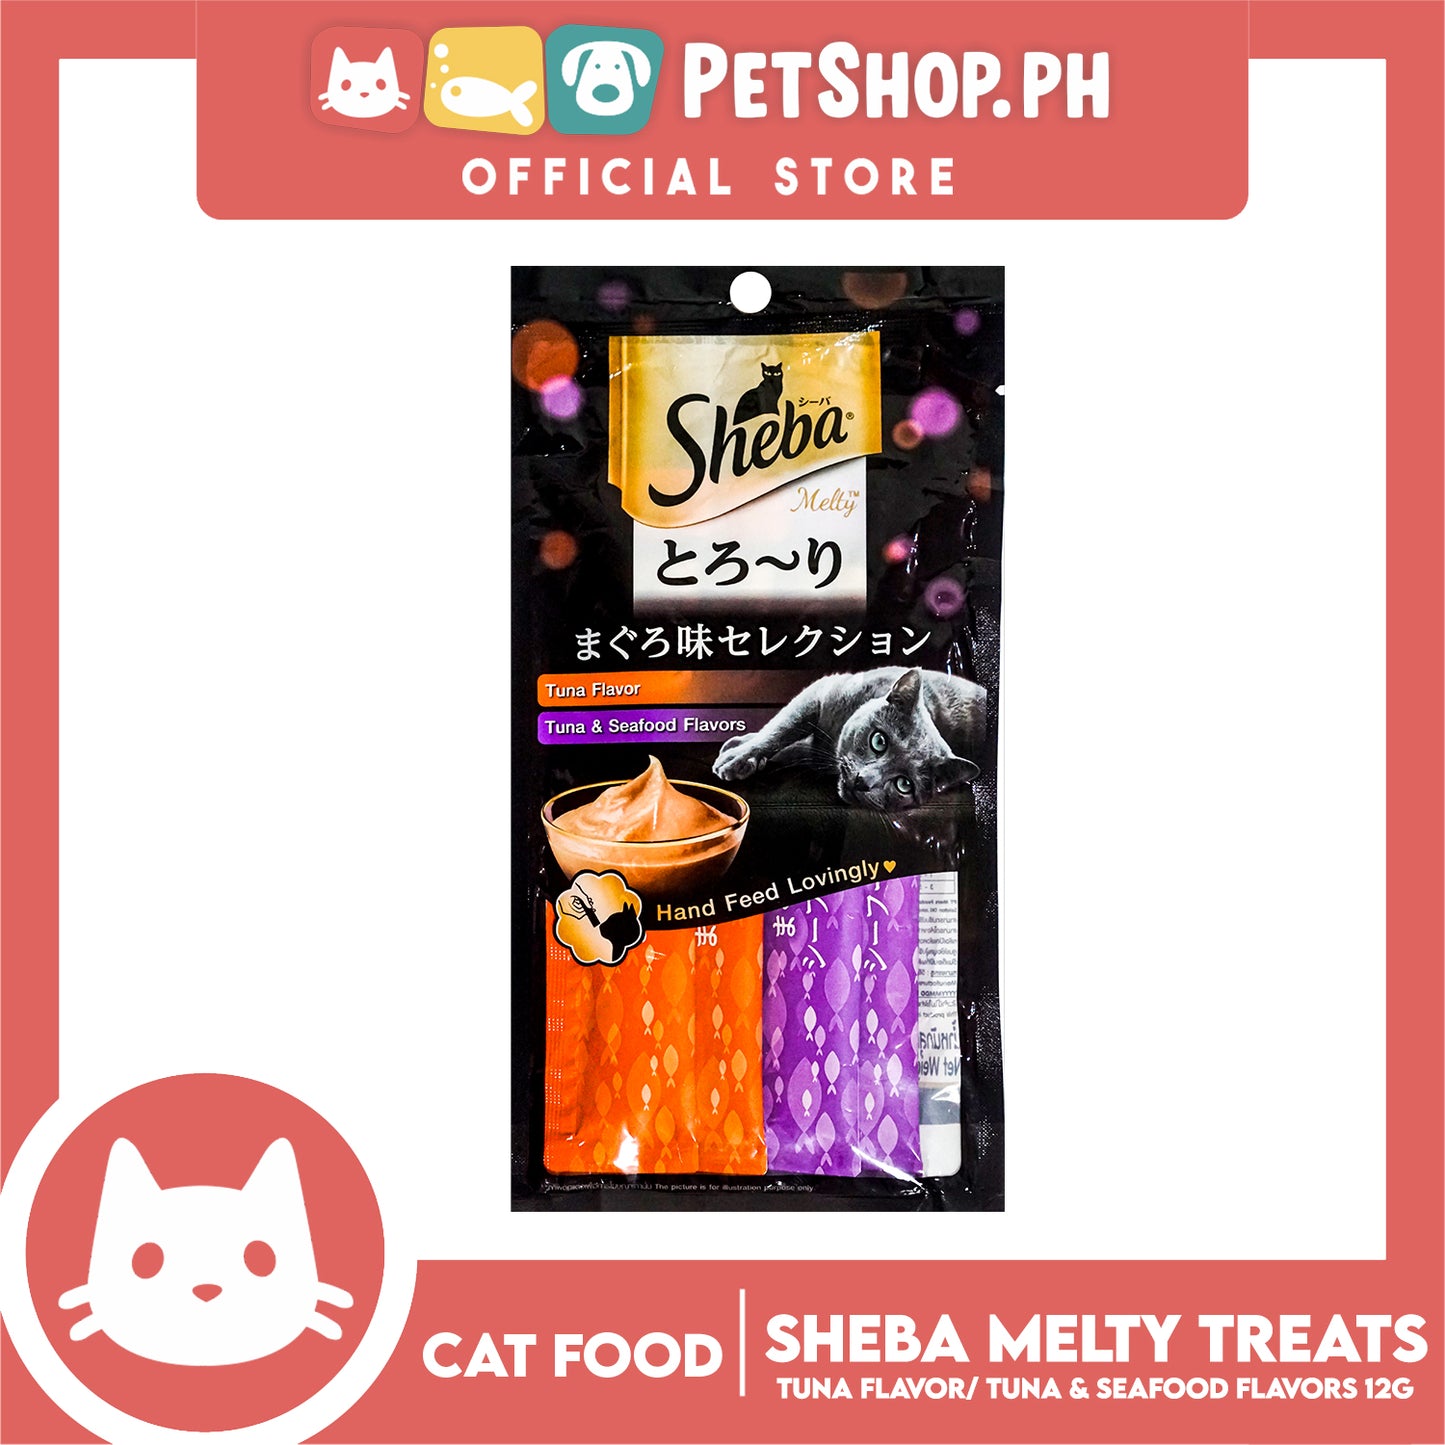 24pcs Sheba Melty Tuna Seafood Flavors Hand Feed Lovingly 12g x 96 sachets Cat Treats